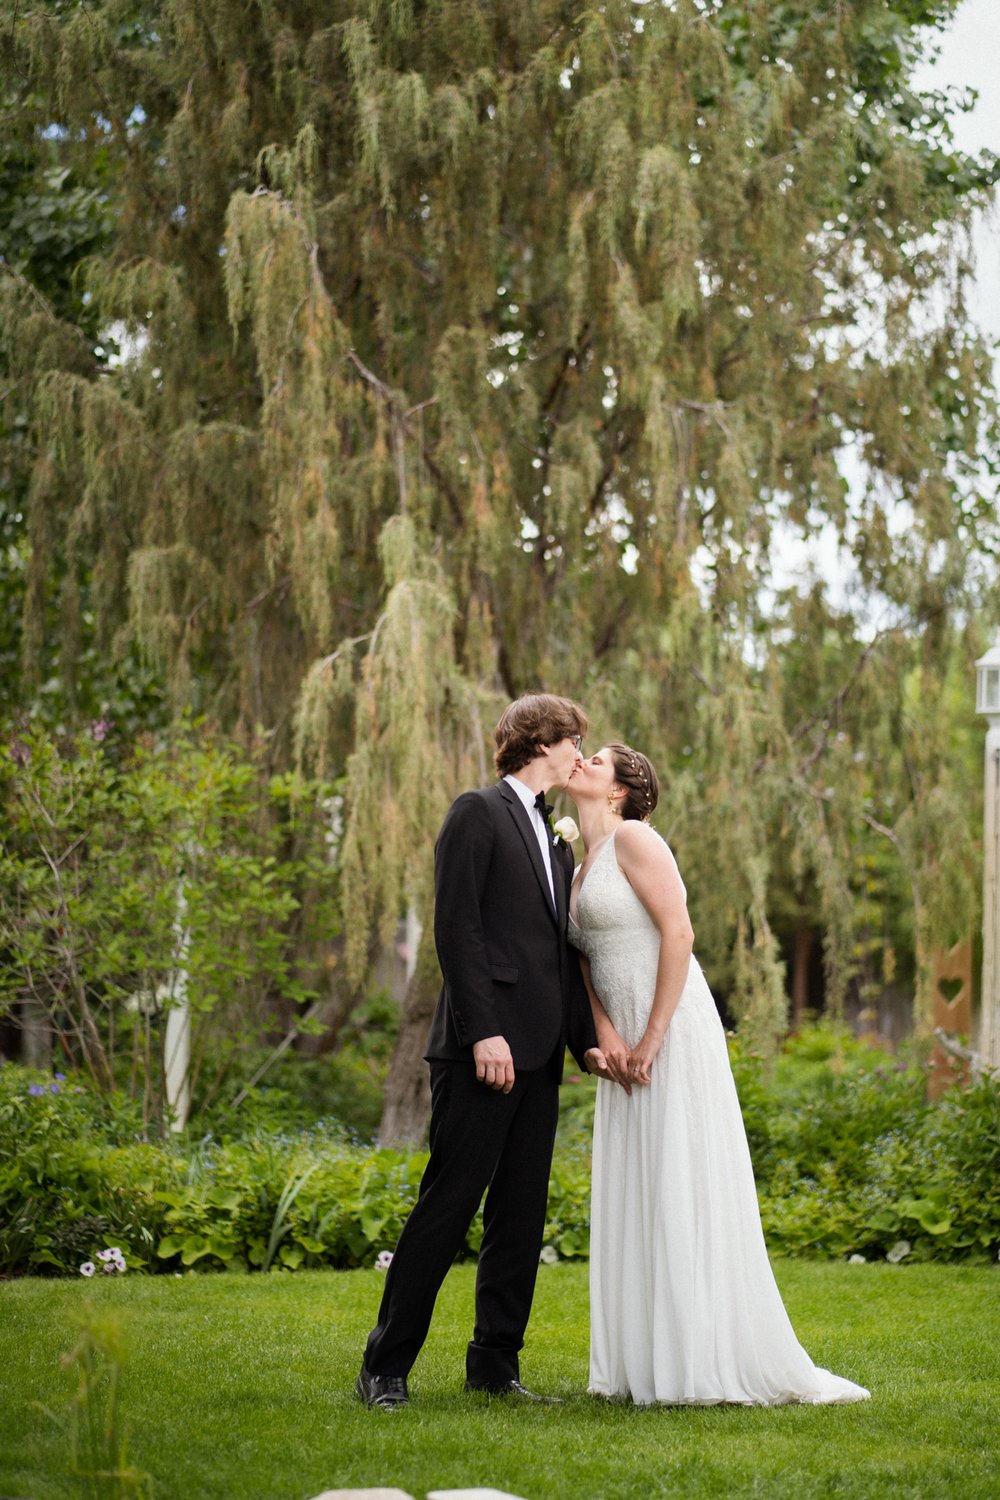 DanWalt Gardens Wedding Photos // Billings, MT Photographer // Sarah and David - 6